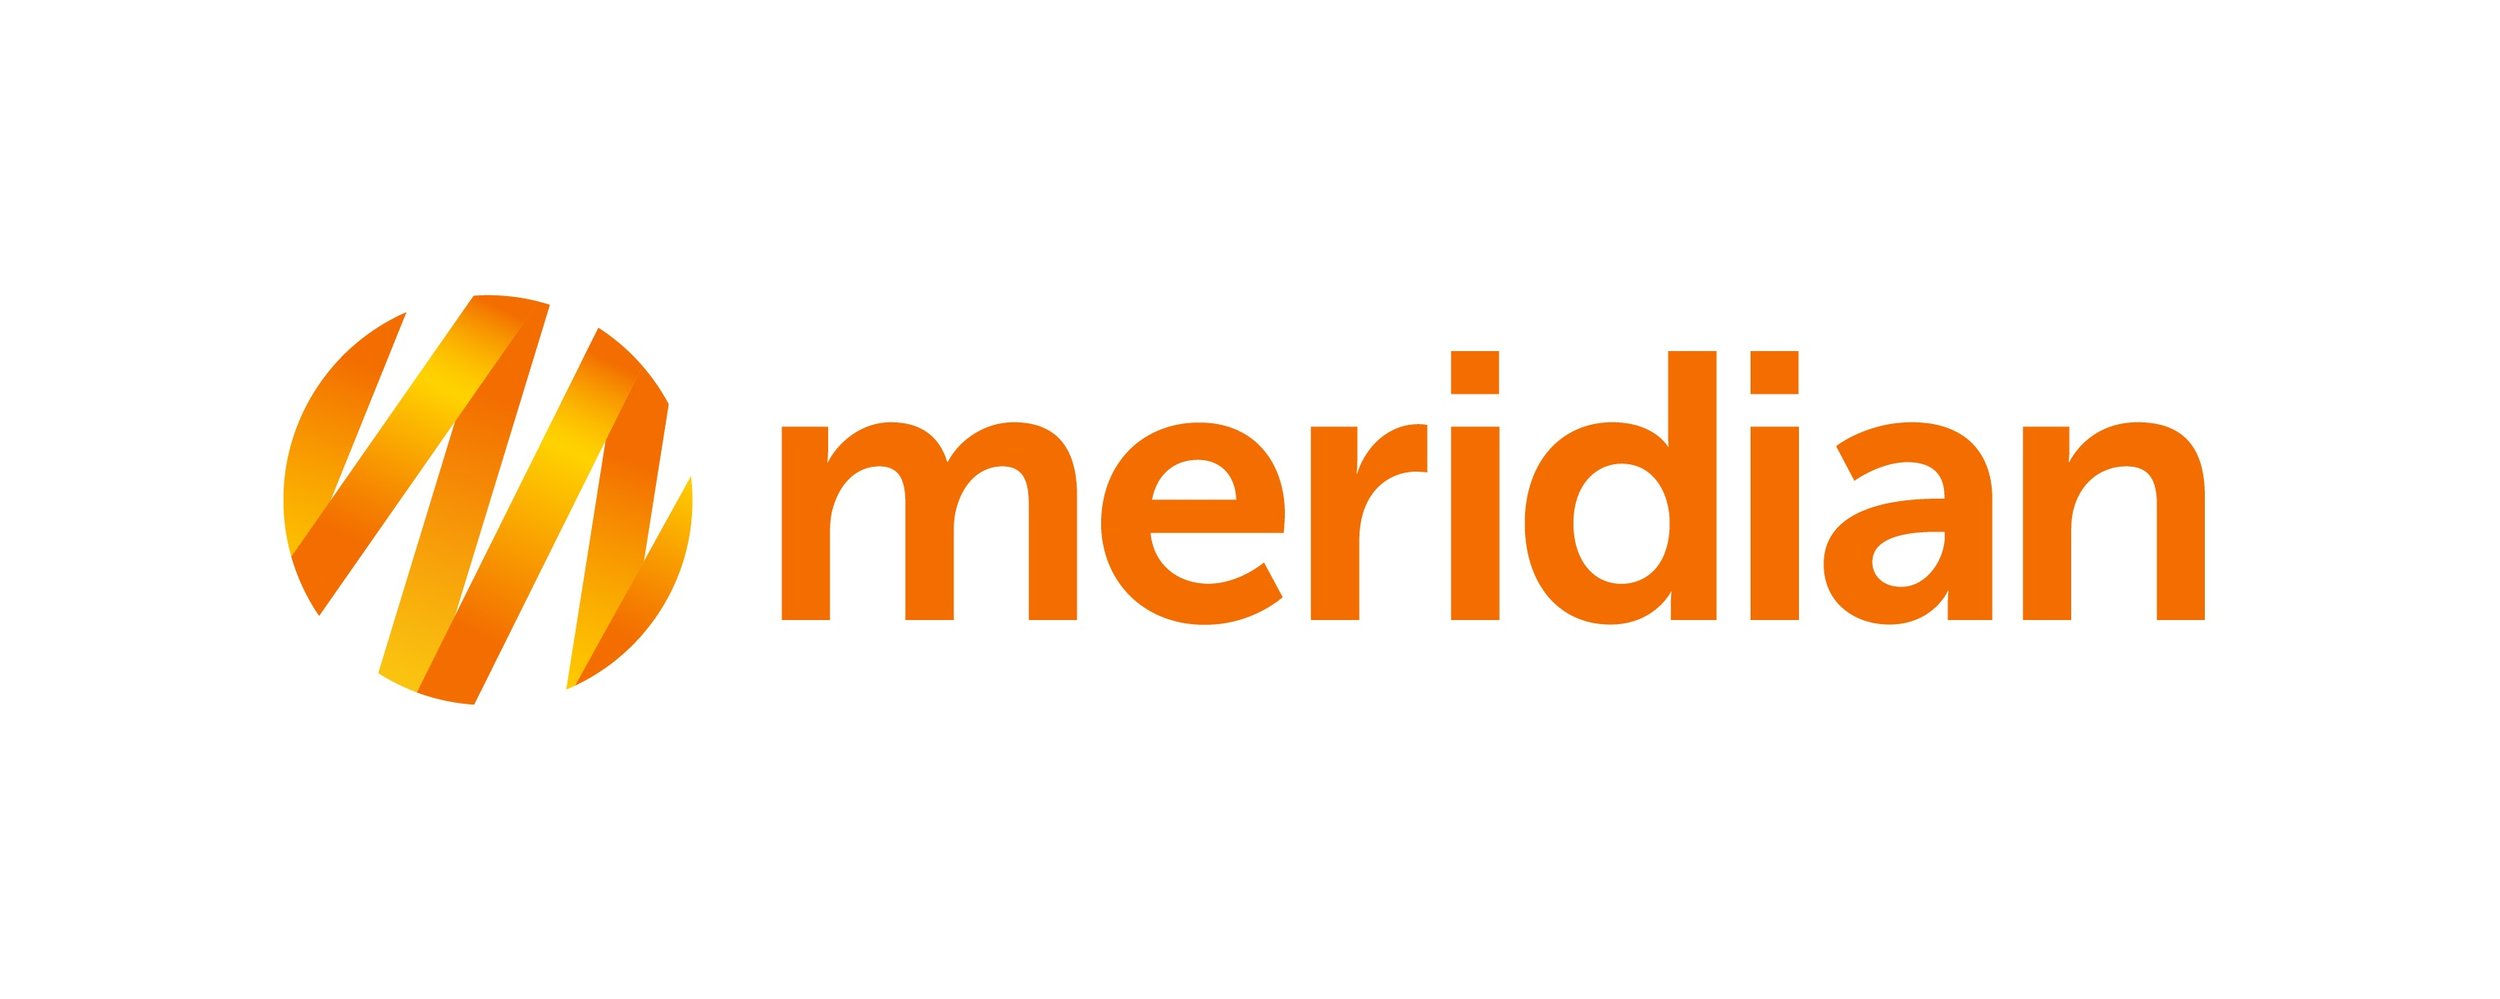 Meridian logo_Gradient_rgb.jpg